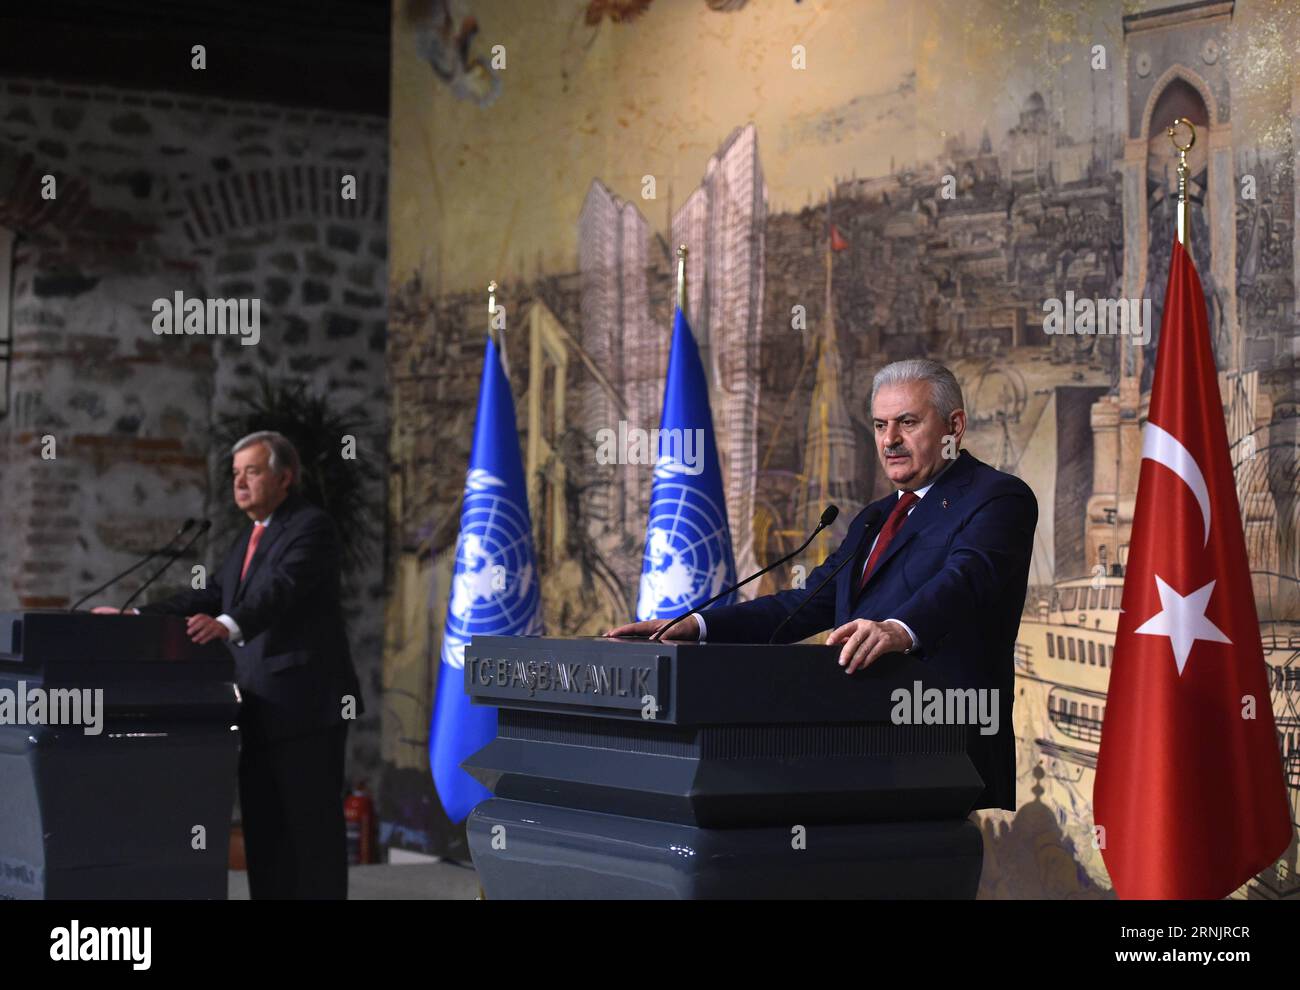 (170210) -- ISTANBUL, 10. Februar 2017 -- der türkische Premierminister Binali Yildirim (R) hält eine Rede auf einer Pressekonferenz mit UN-Generalsekretär Antonio Guterres in Istanbul, Türkei, am 10. Februar 2017. Der türkische Premierminister Binali Yildirim und der UN-Generalsekretär Antonio Guterres äußerten am Freitag ihren Optimismus für eine bahnbrechende Lösung der Zypernfrage in naher Zukunft, die beide Gemeinschaften zufriedenstellen würde. ) TÜRKEI-ISTANBUL-UN-GUTERRES-ZYPERN-AUSGABE HexCanling PUBLICATIONxNOTxINxCHN 170210 Istanbul 10. Februar 2017 die türkischen Premierminister Binali Yildirim r halten eine Rede AUF einer Prär Stockfoto